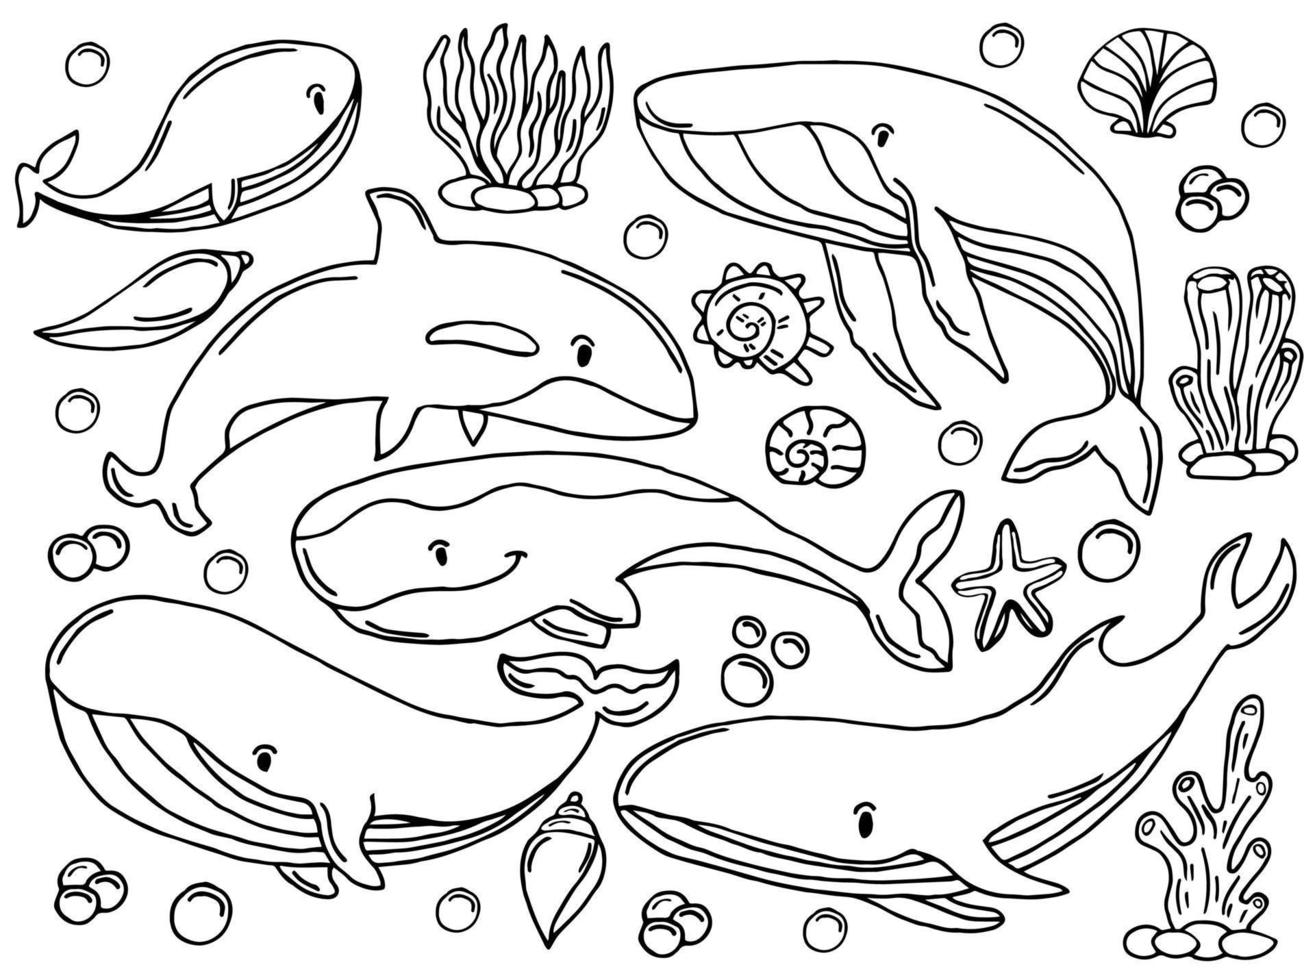 conjunto de esboço de cores de baleias. grande coleção de diferentes baleias e golfinhos desenhados à mão em estilo de gravura. ilustração zoológica de mamíferos oceânicos vetor